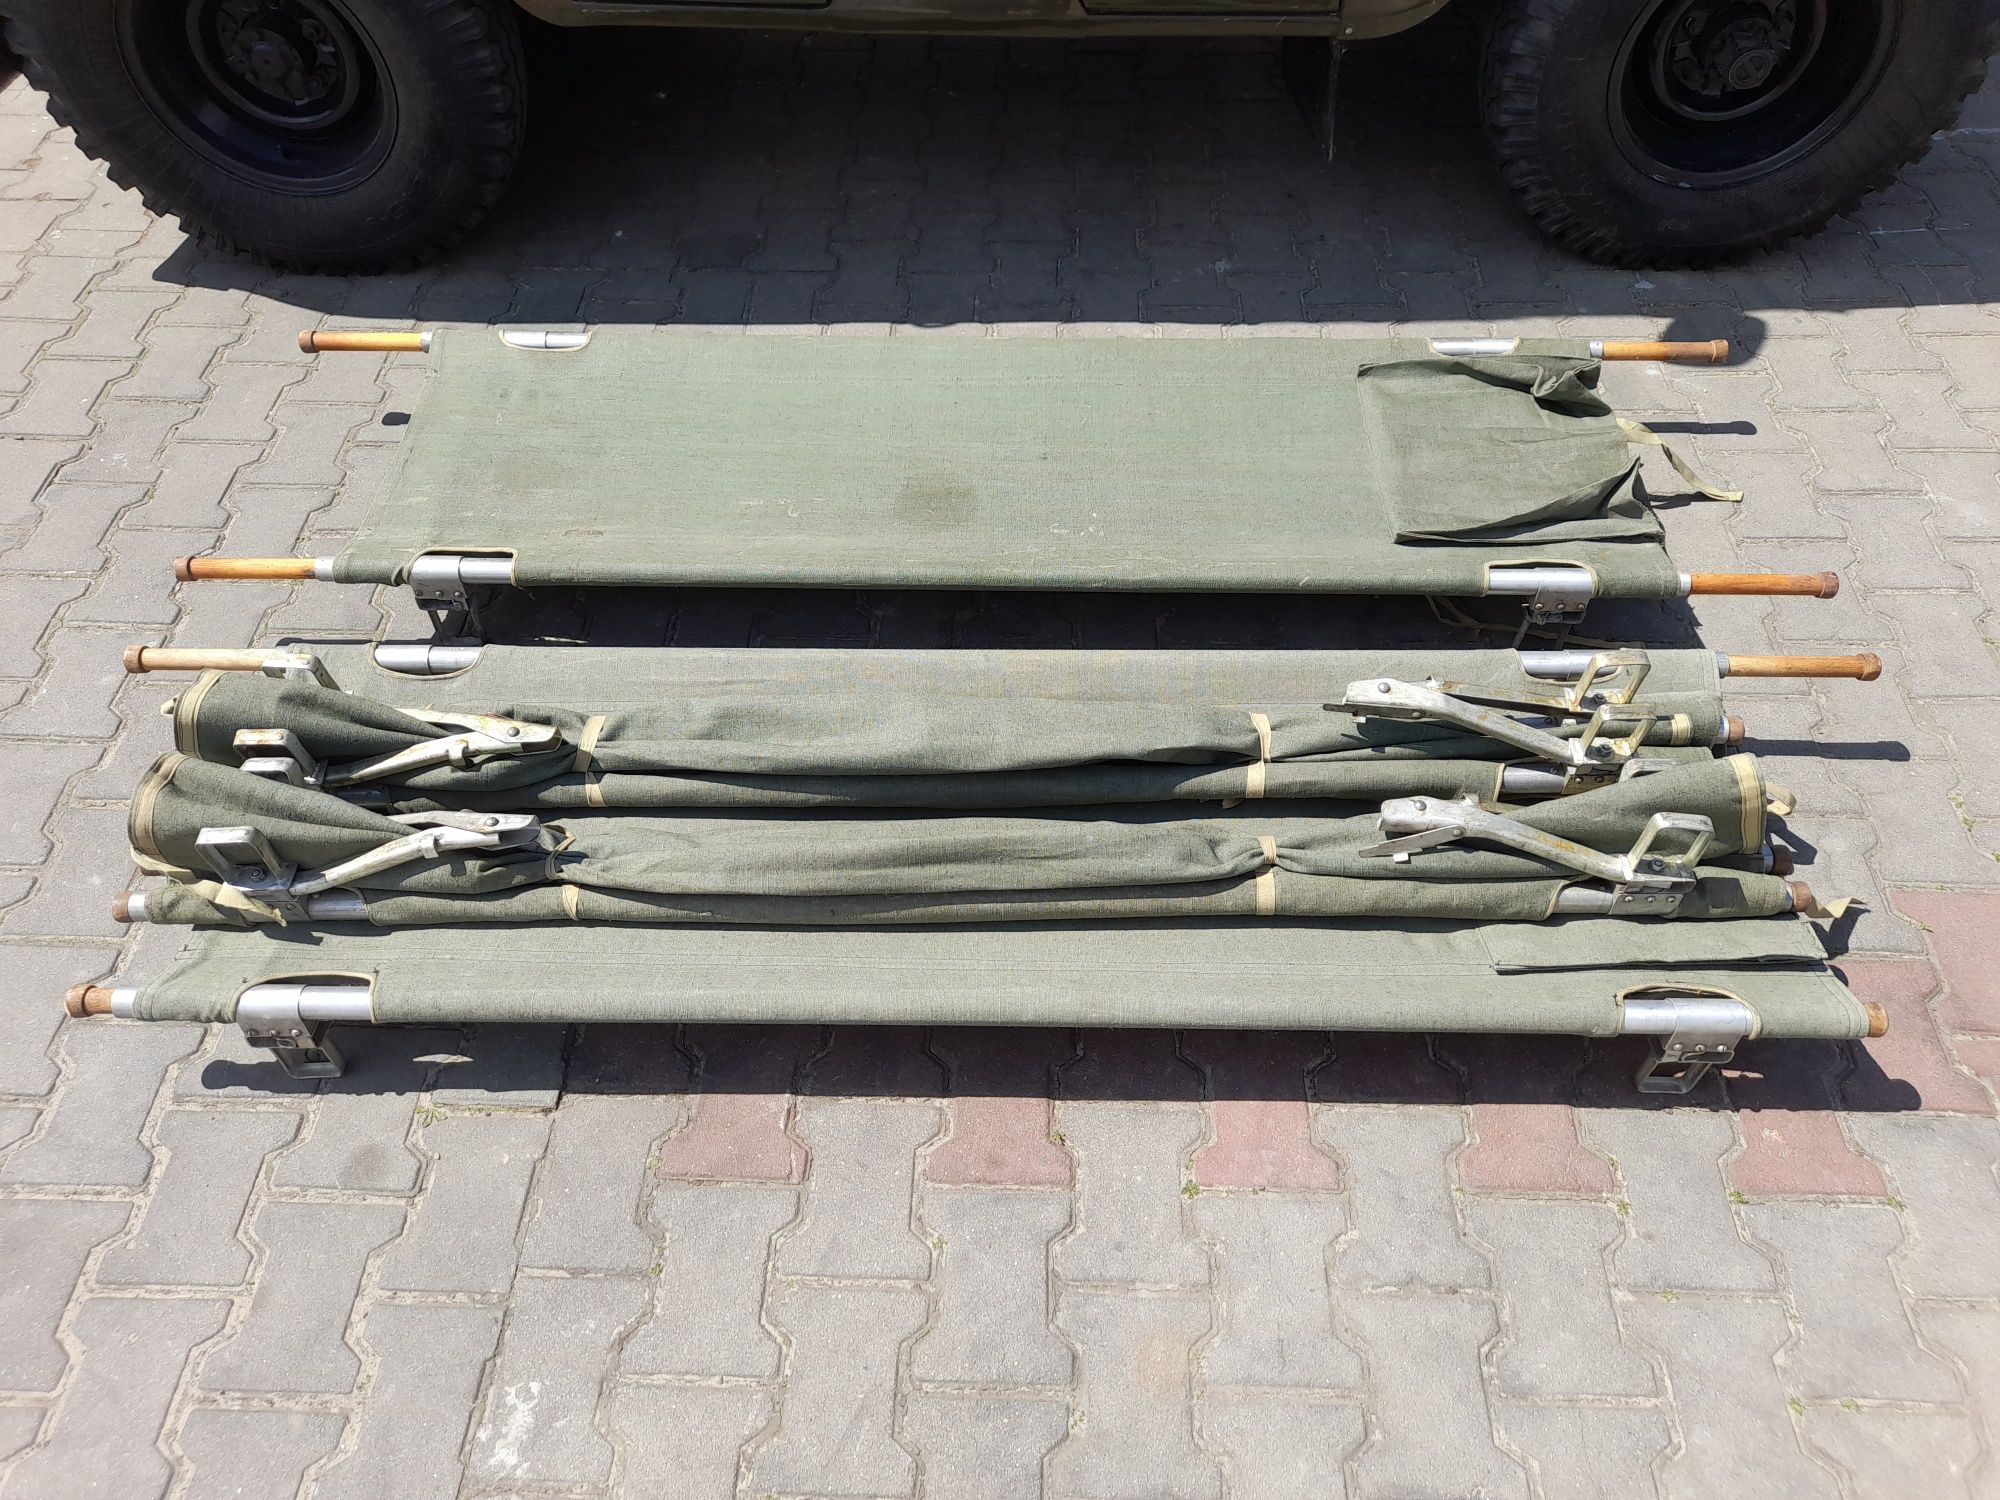 Nosze brezentowe aluminiowe wojskowe składane